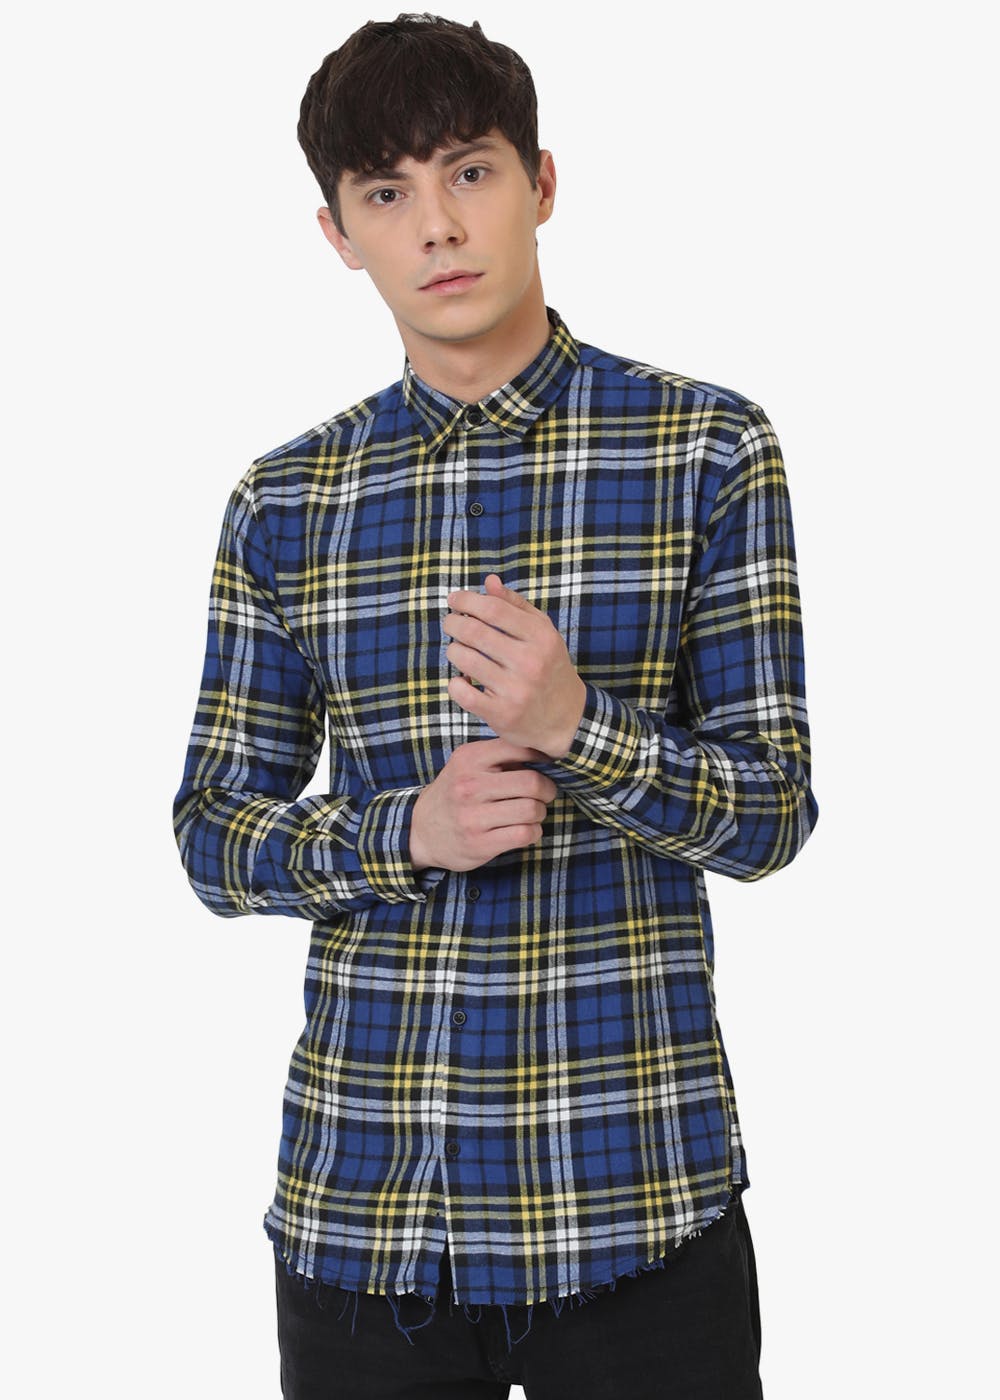 Get Interwoven Checkered Blue Shirt at ₹ 599 | LBB Shop